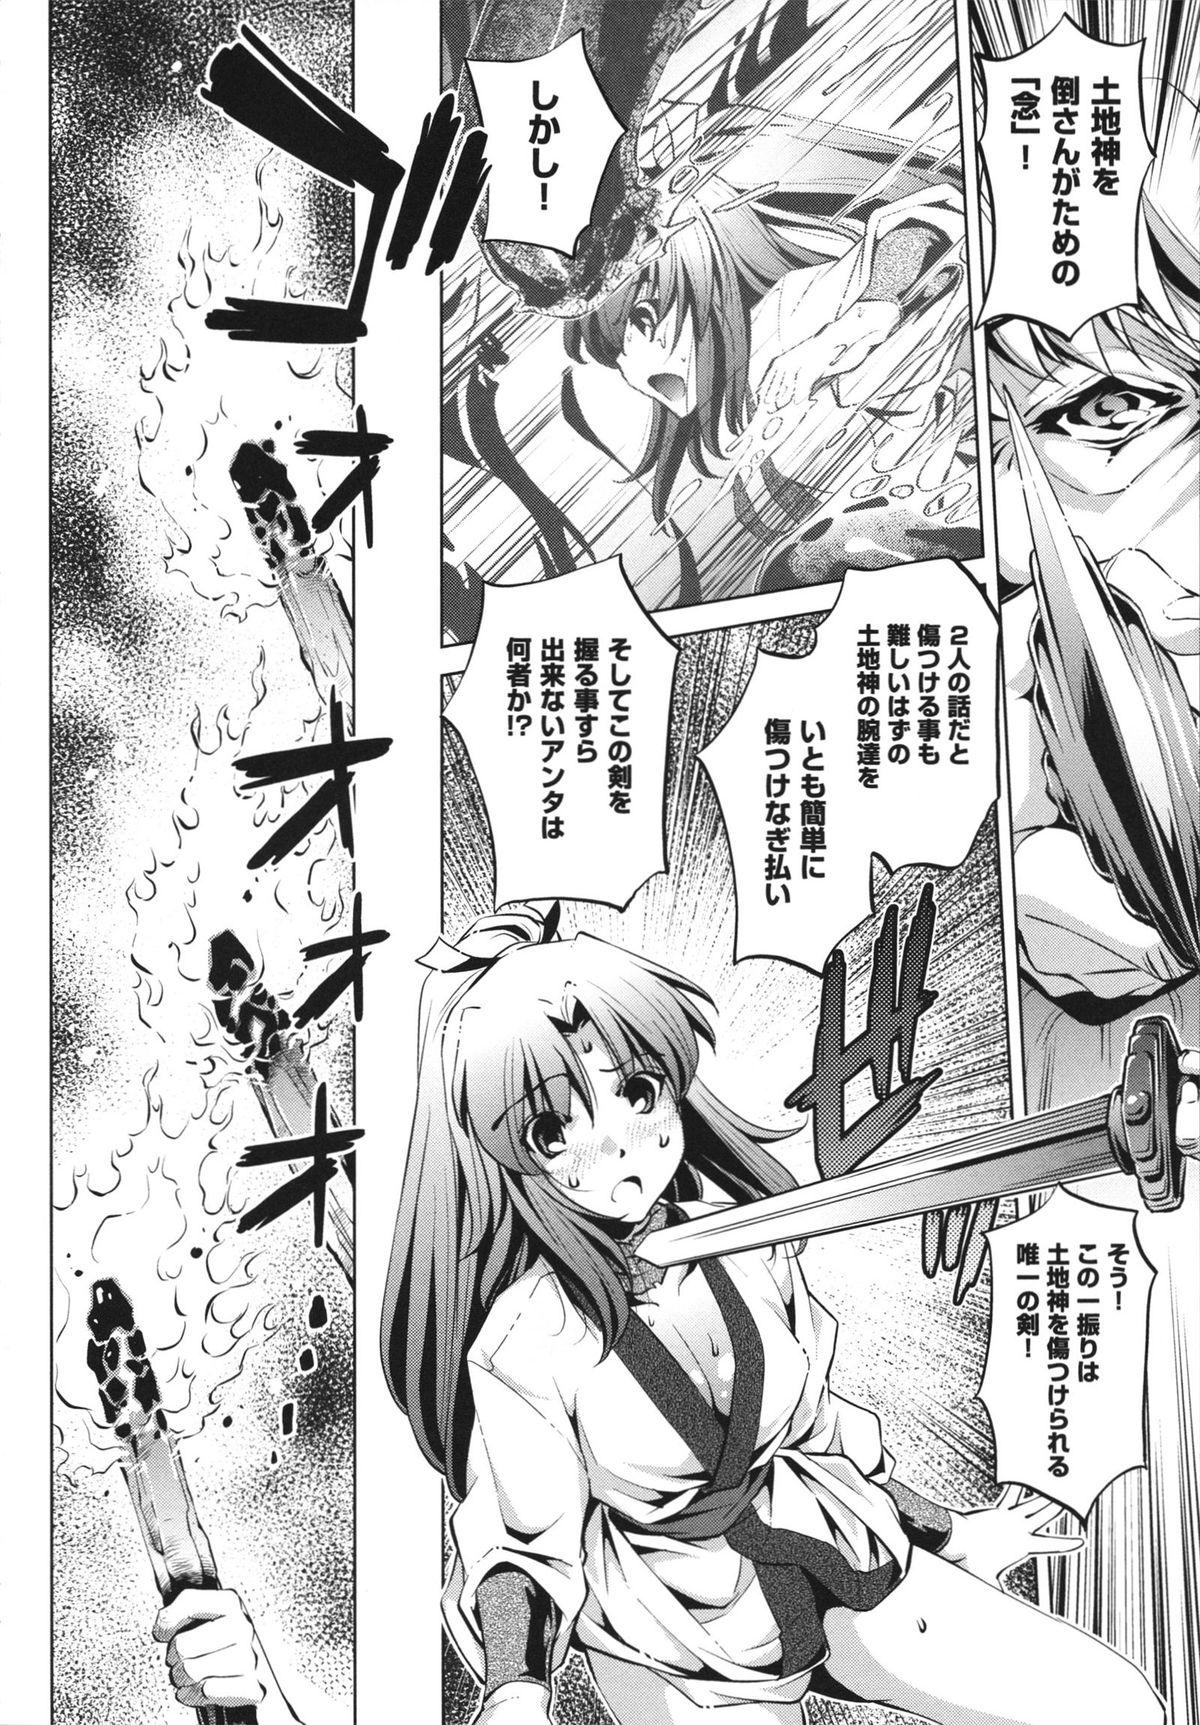 [Ootori Ryuuji] Shokushu wa Yawarakana Chibusa ni Makitsuki Onna-tachi no Ana wo Kakimidasu - Feeler coils around a soft breast and violates women's hole. 168